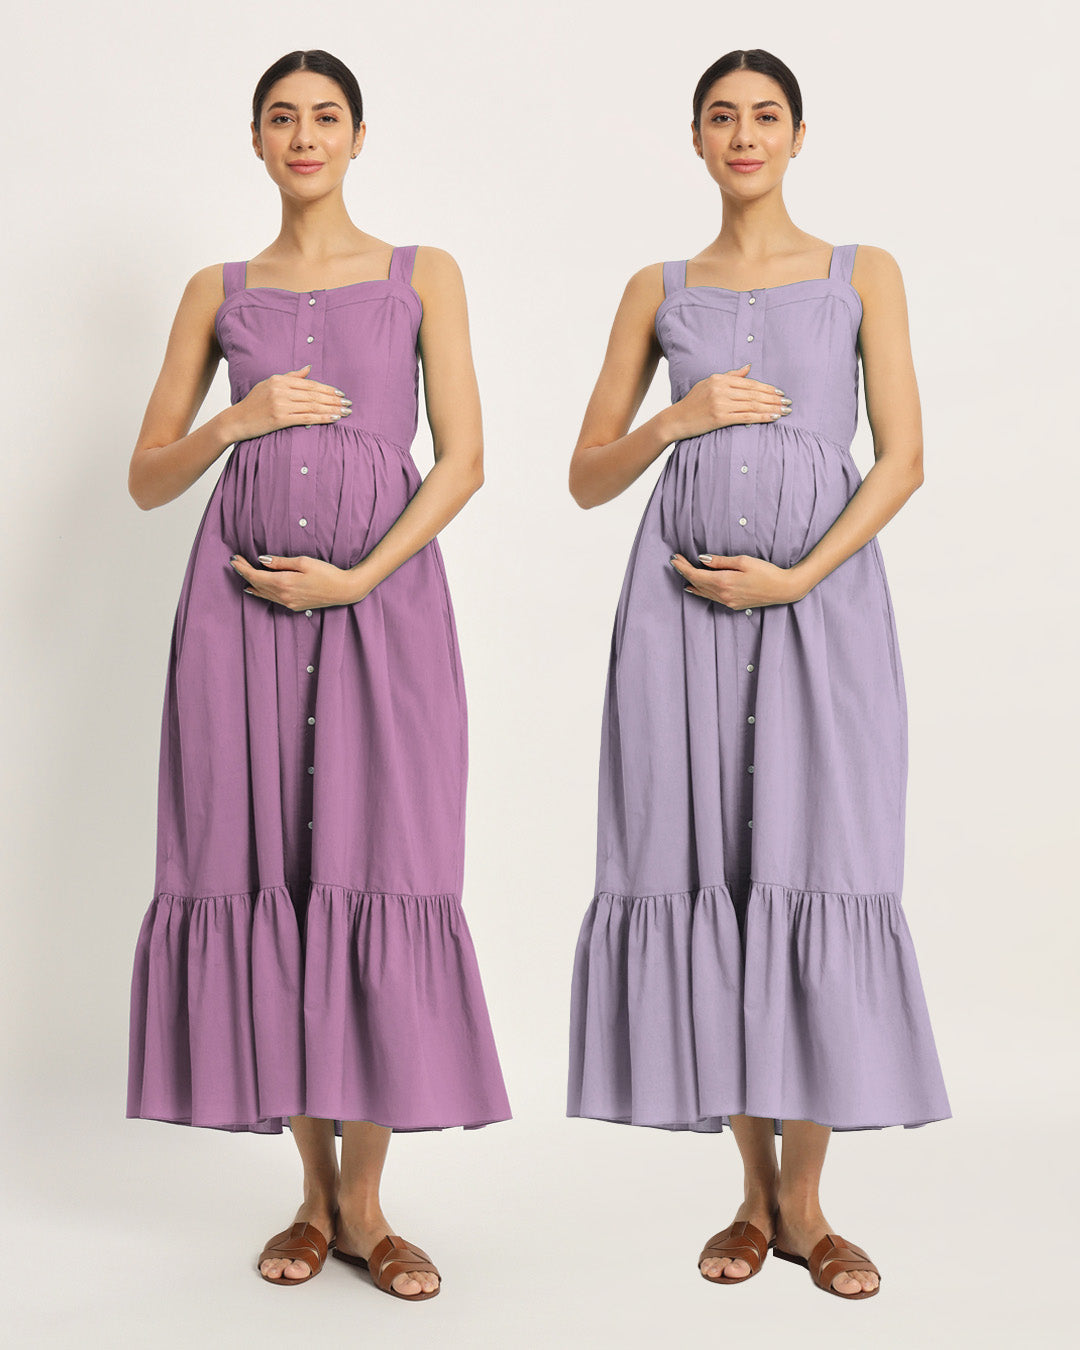 Combo: Iris Pink & Lilac Mama Modish Maternity & Nursing Dress